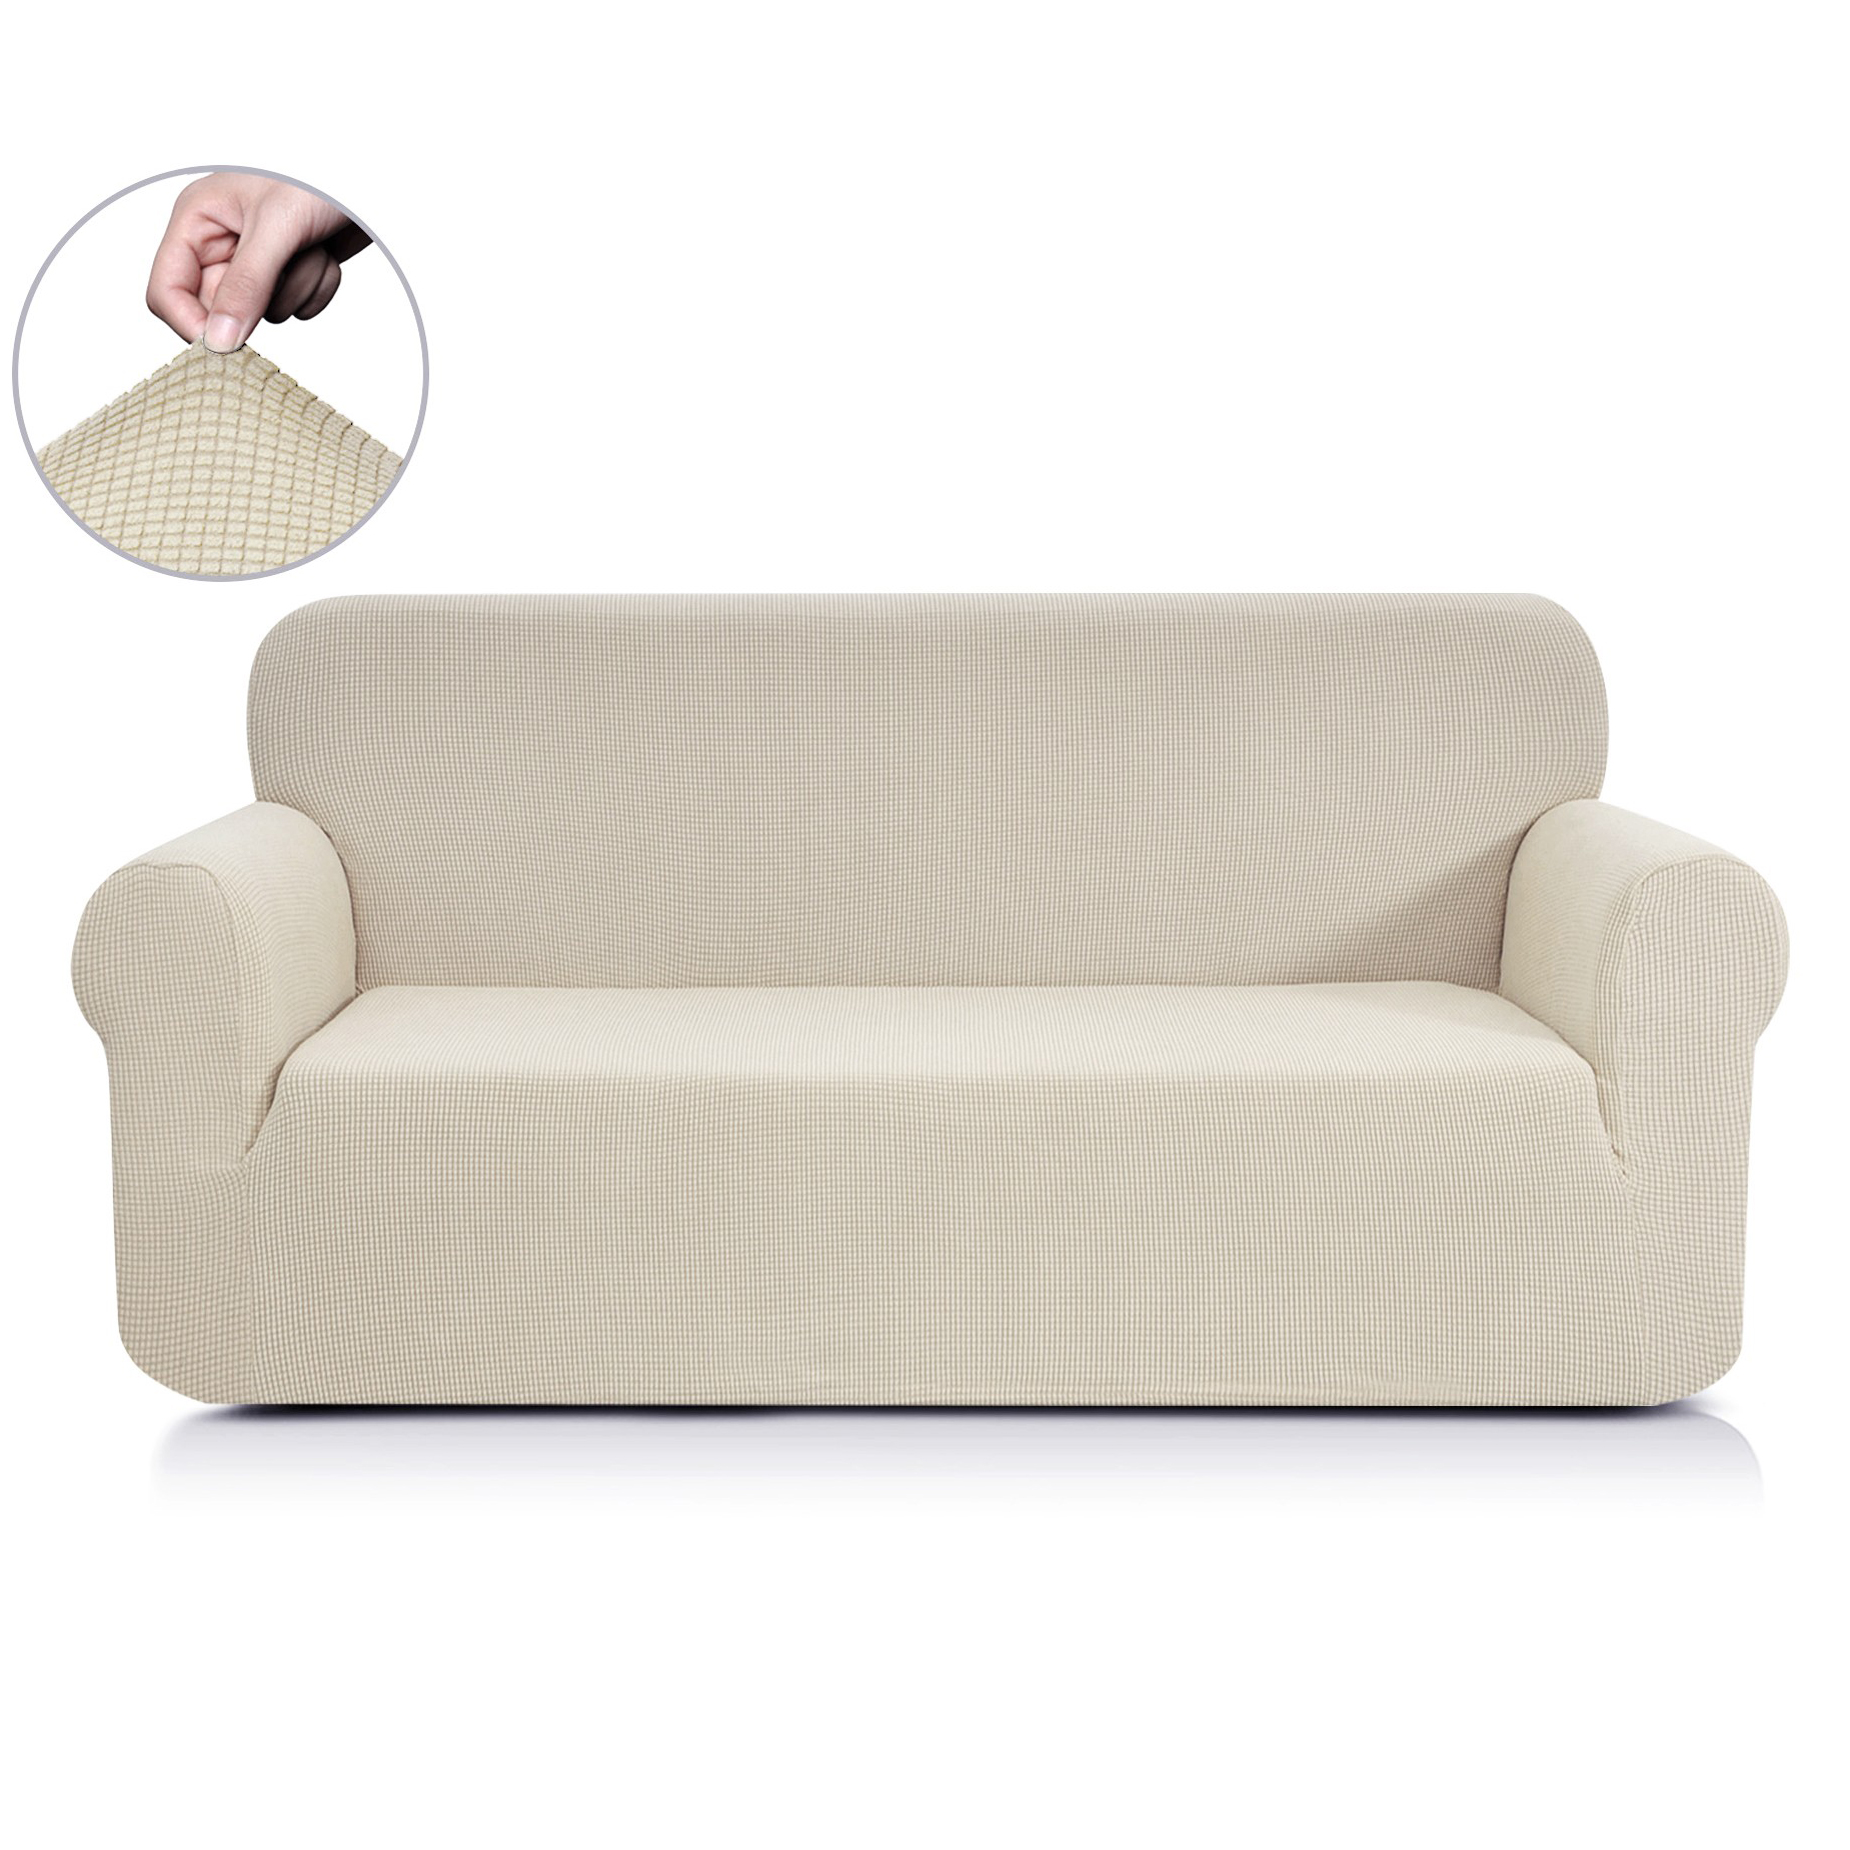 Чехол для дивана Моника цвет: молочный (Трехместный), размер Трехместный